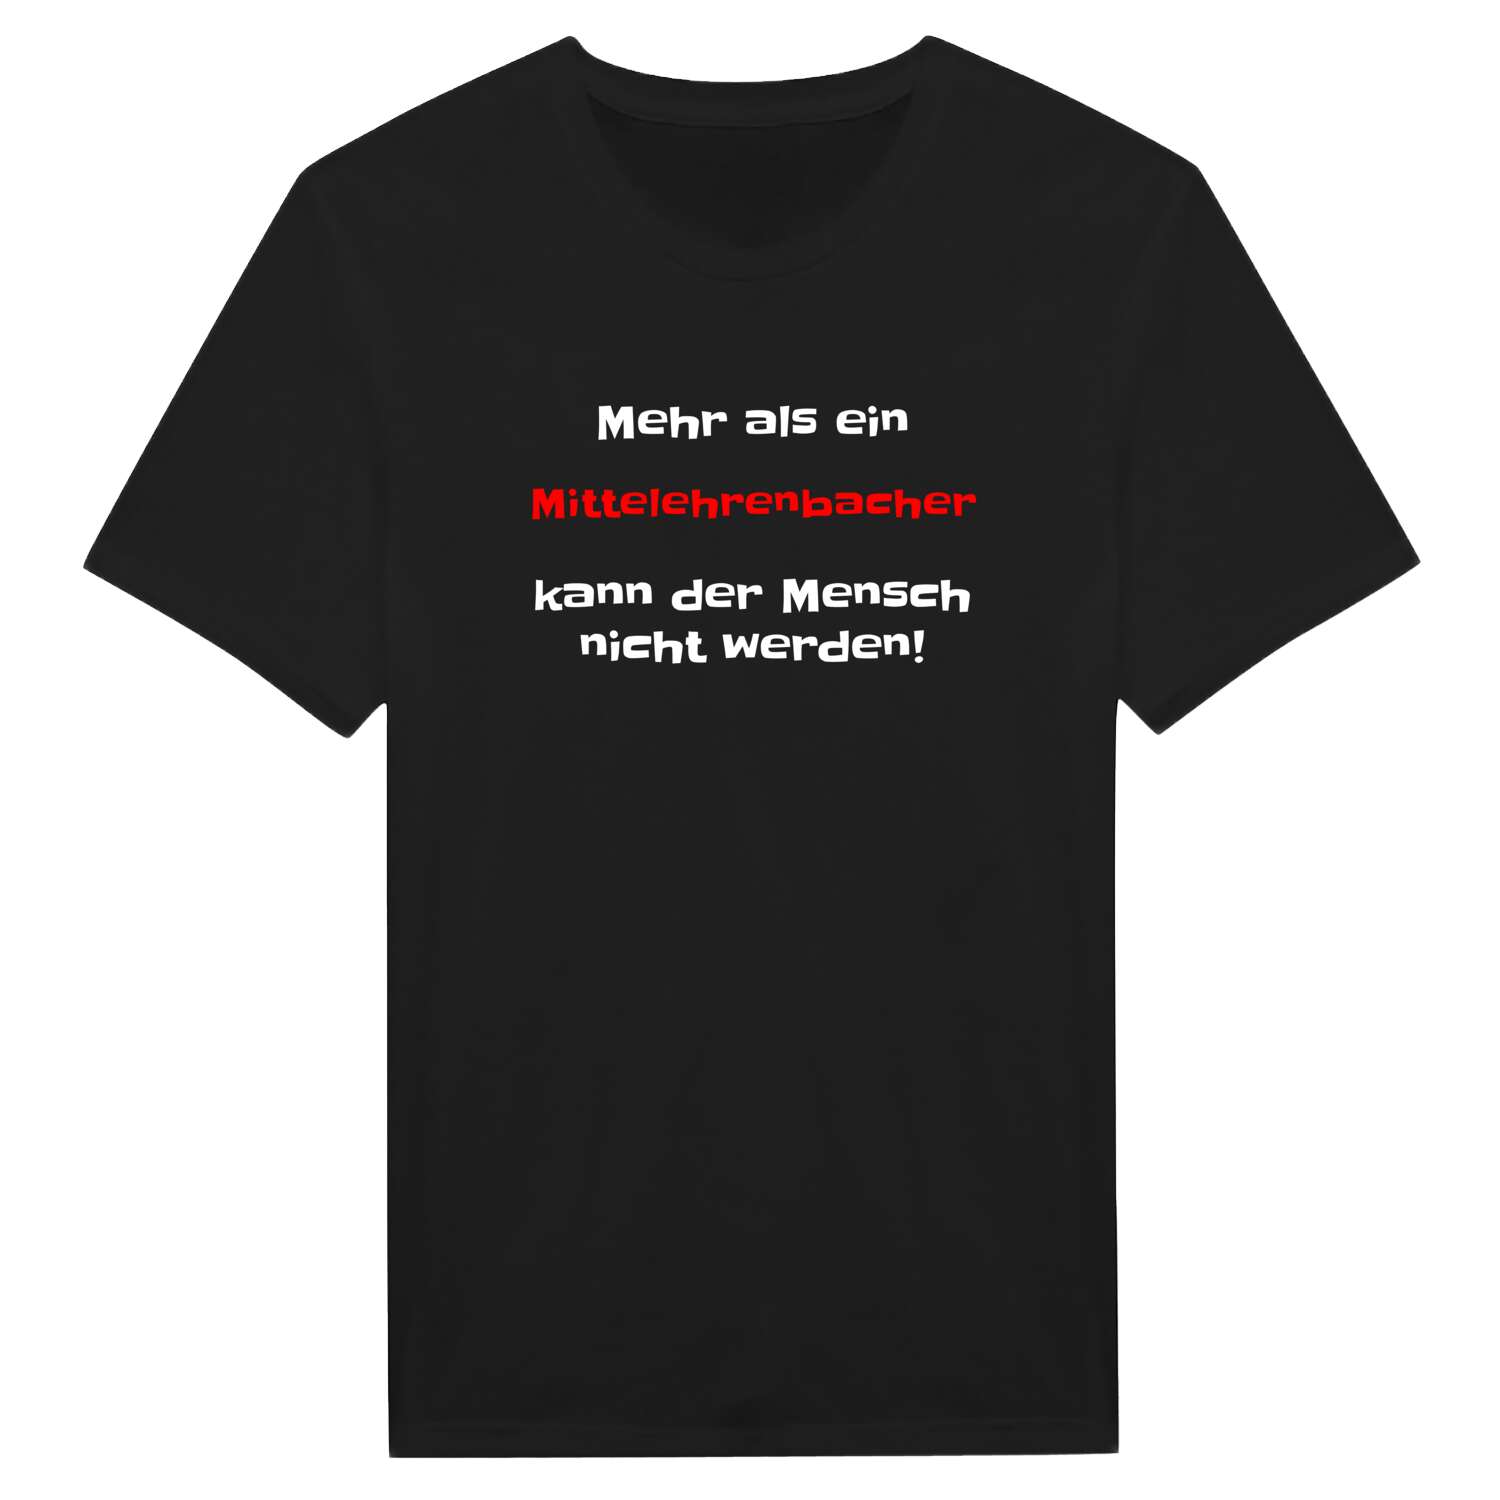 Mittelehrenbach T-Shirt »Mehr als ein«